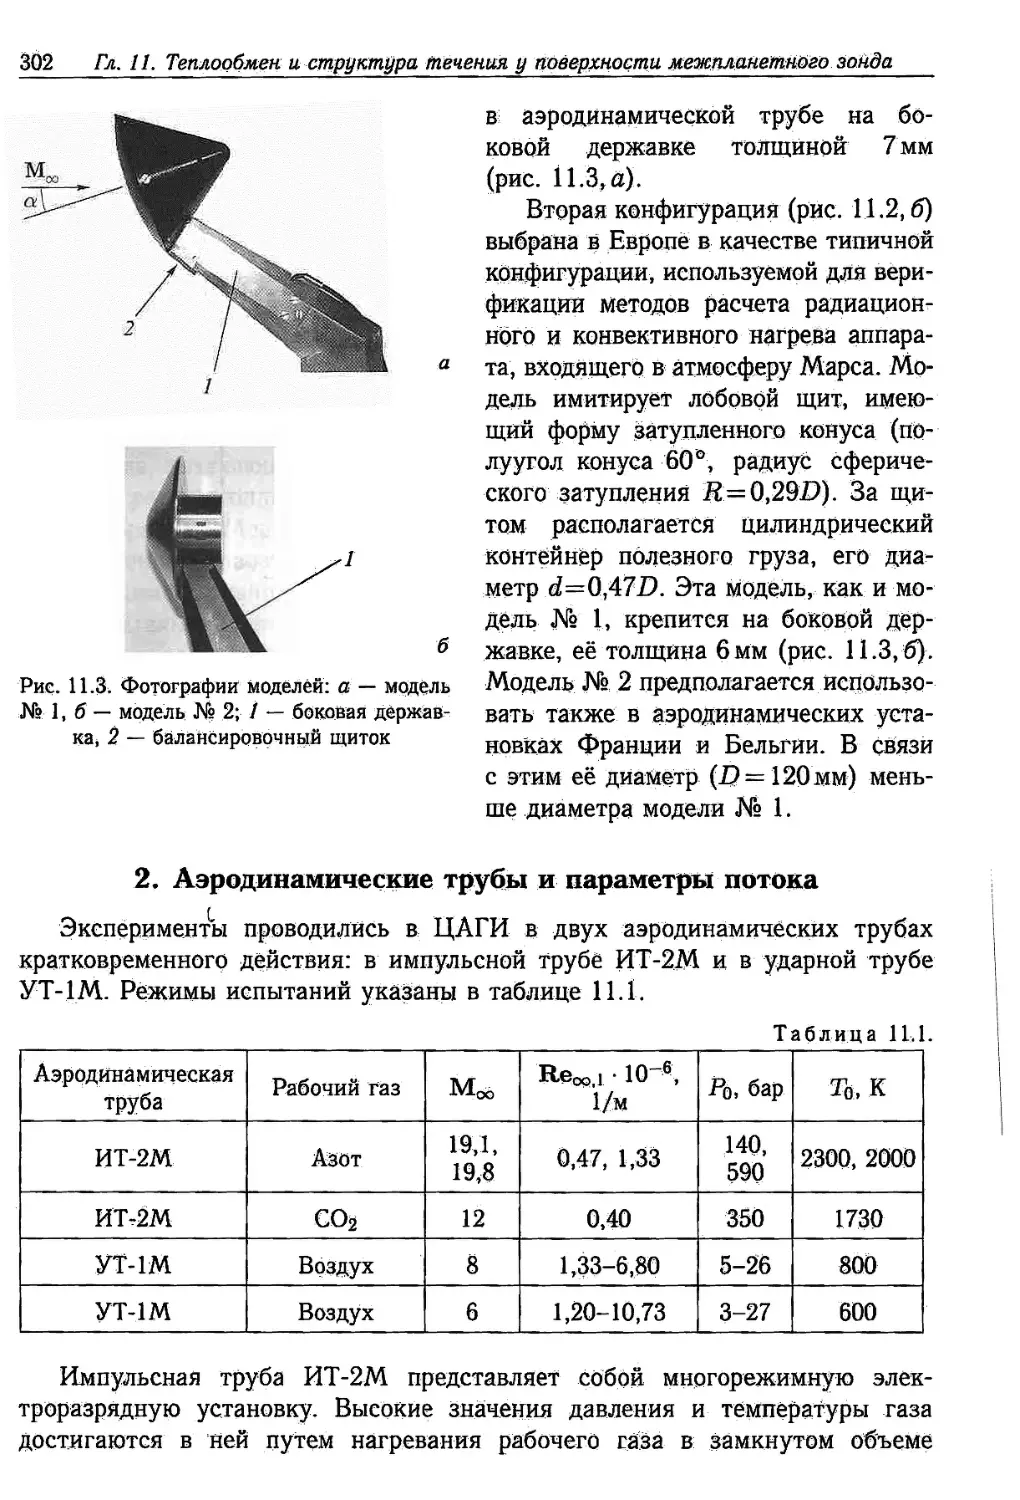 2. Аэродинамические трубы и параметры потока